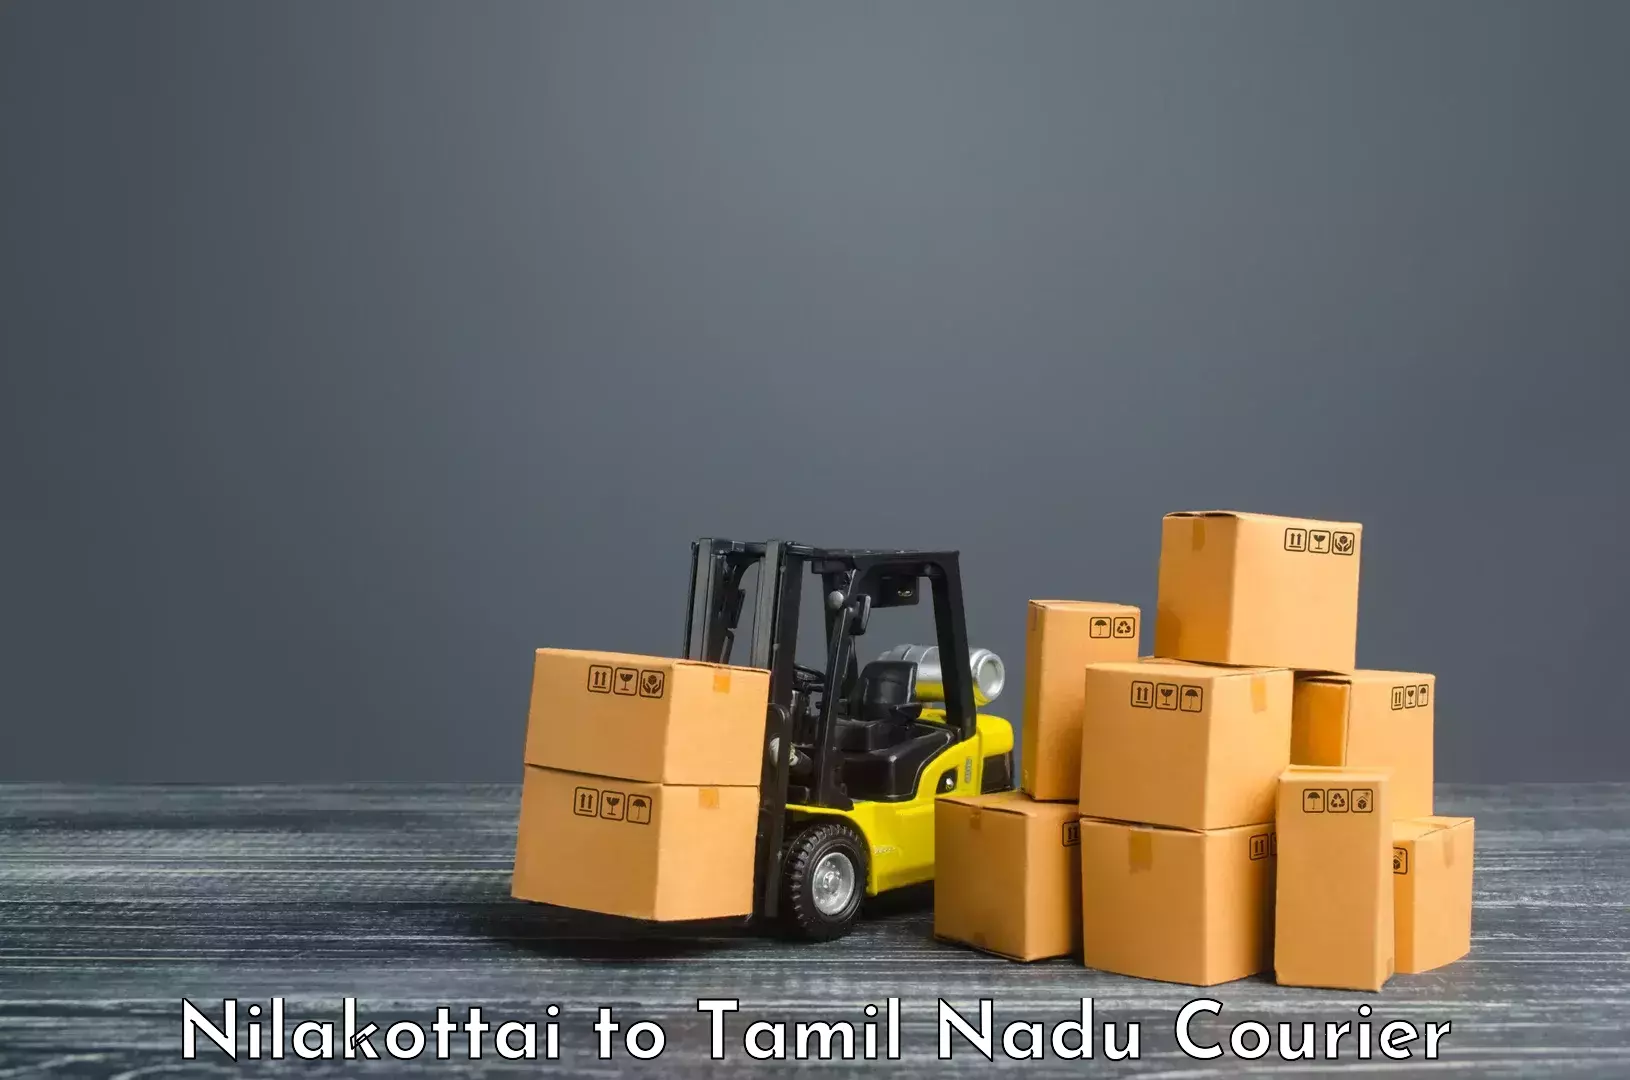 Quality courier partnerships Nilakottai to Chidambaram